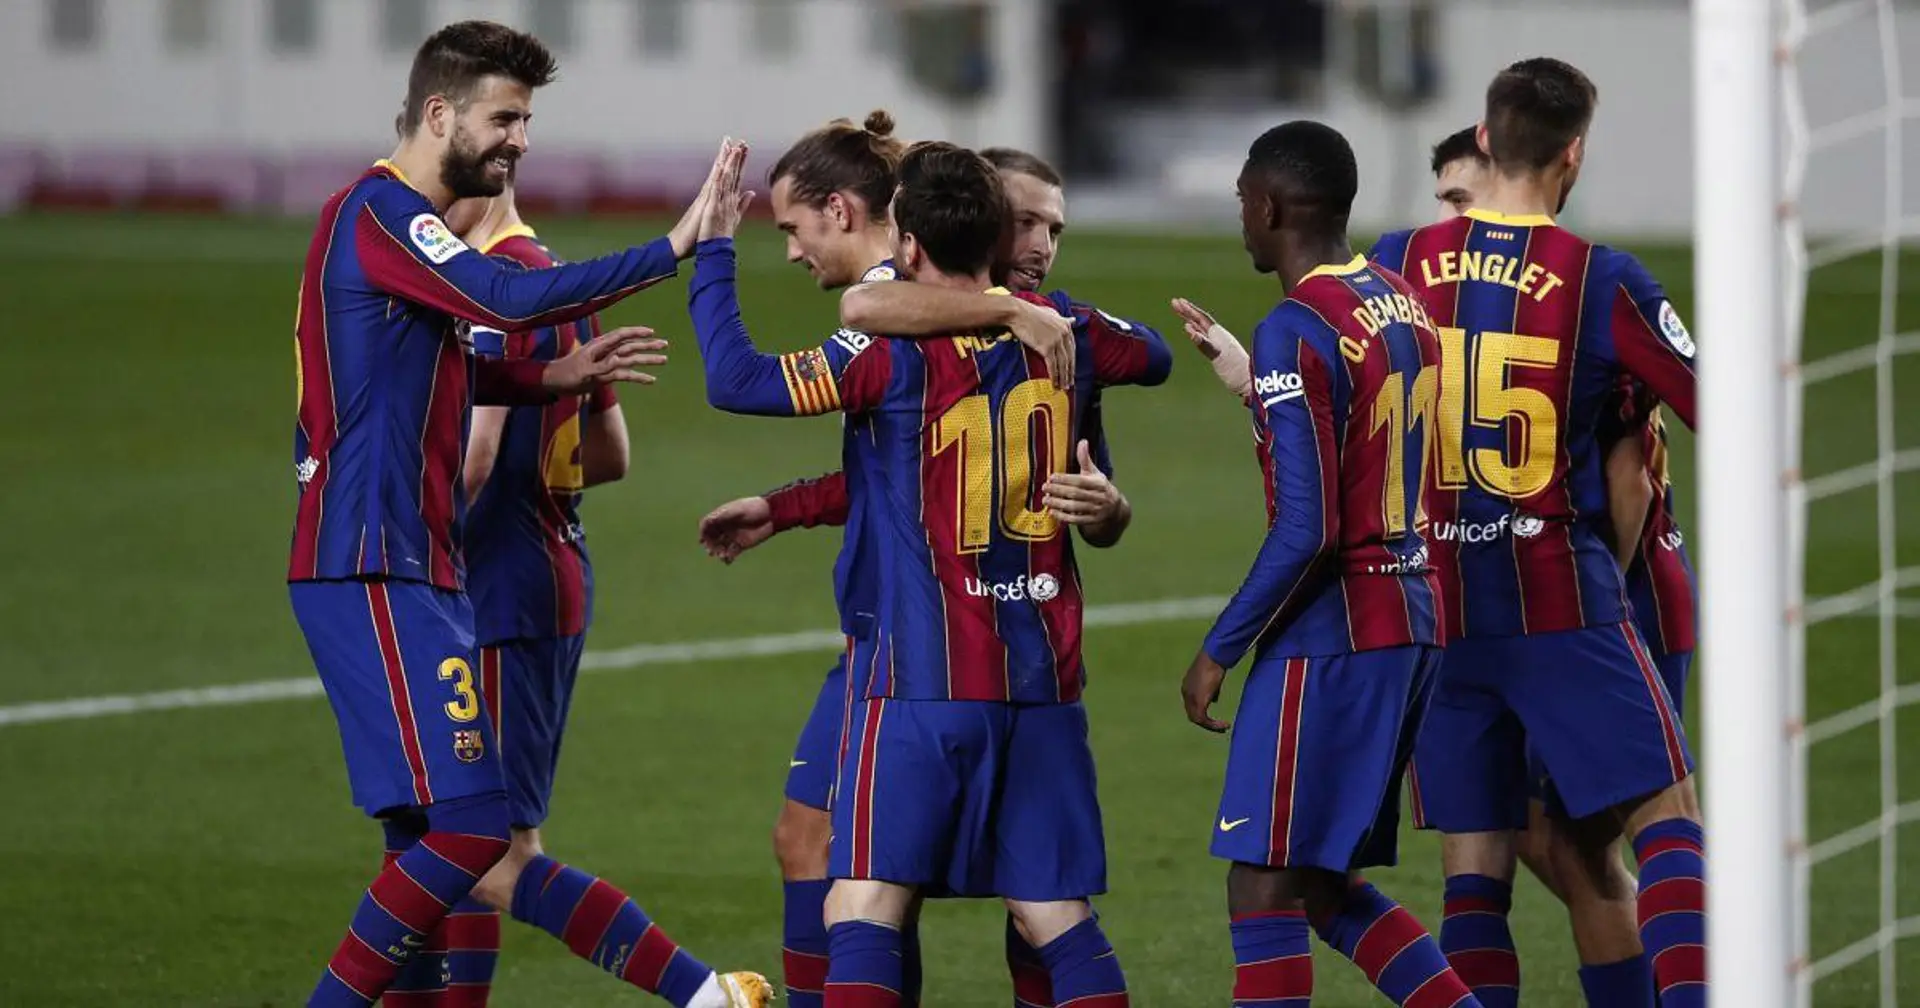 De Jong a la cabeza, Messi segundo: los jugadores del Barça más utilizados esta temporada